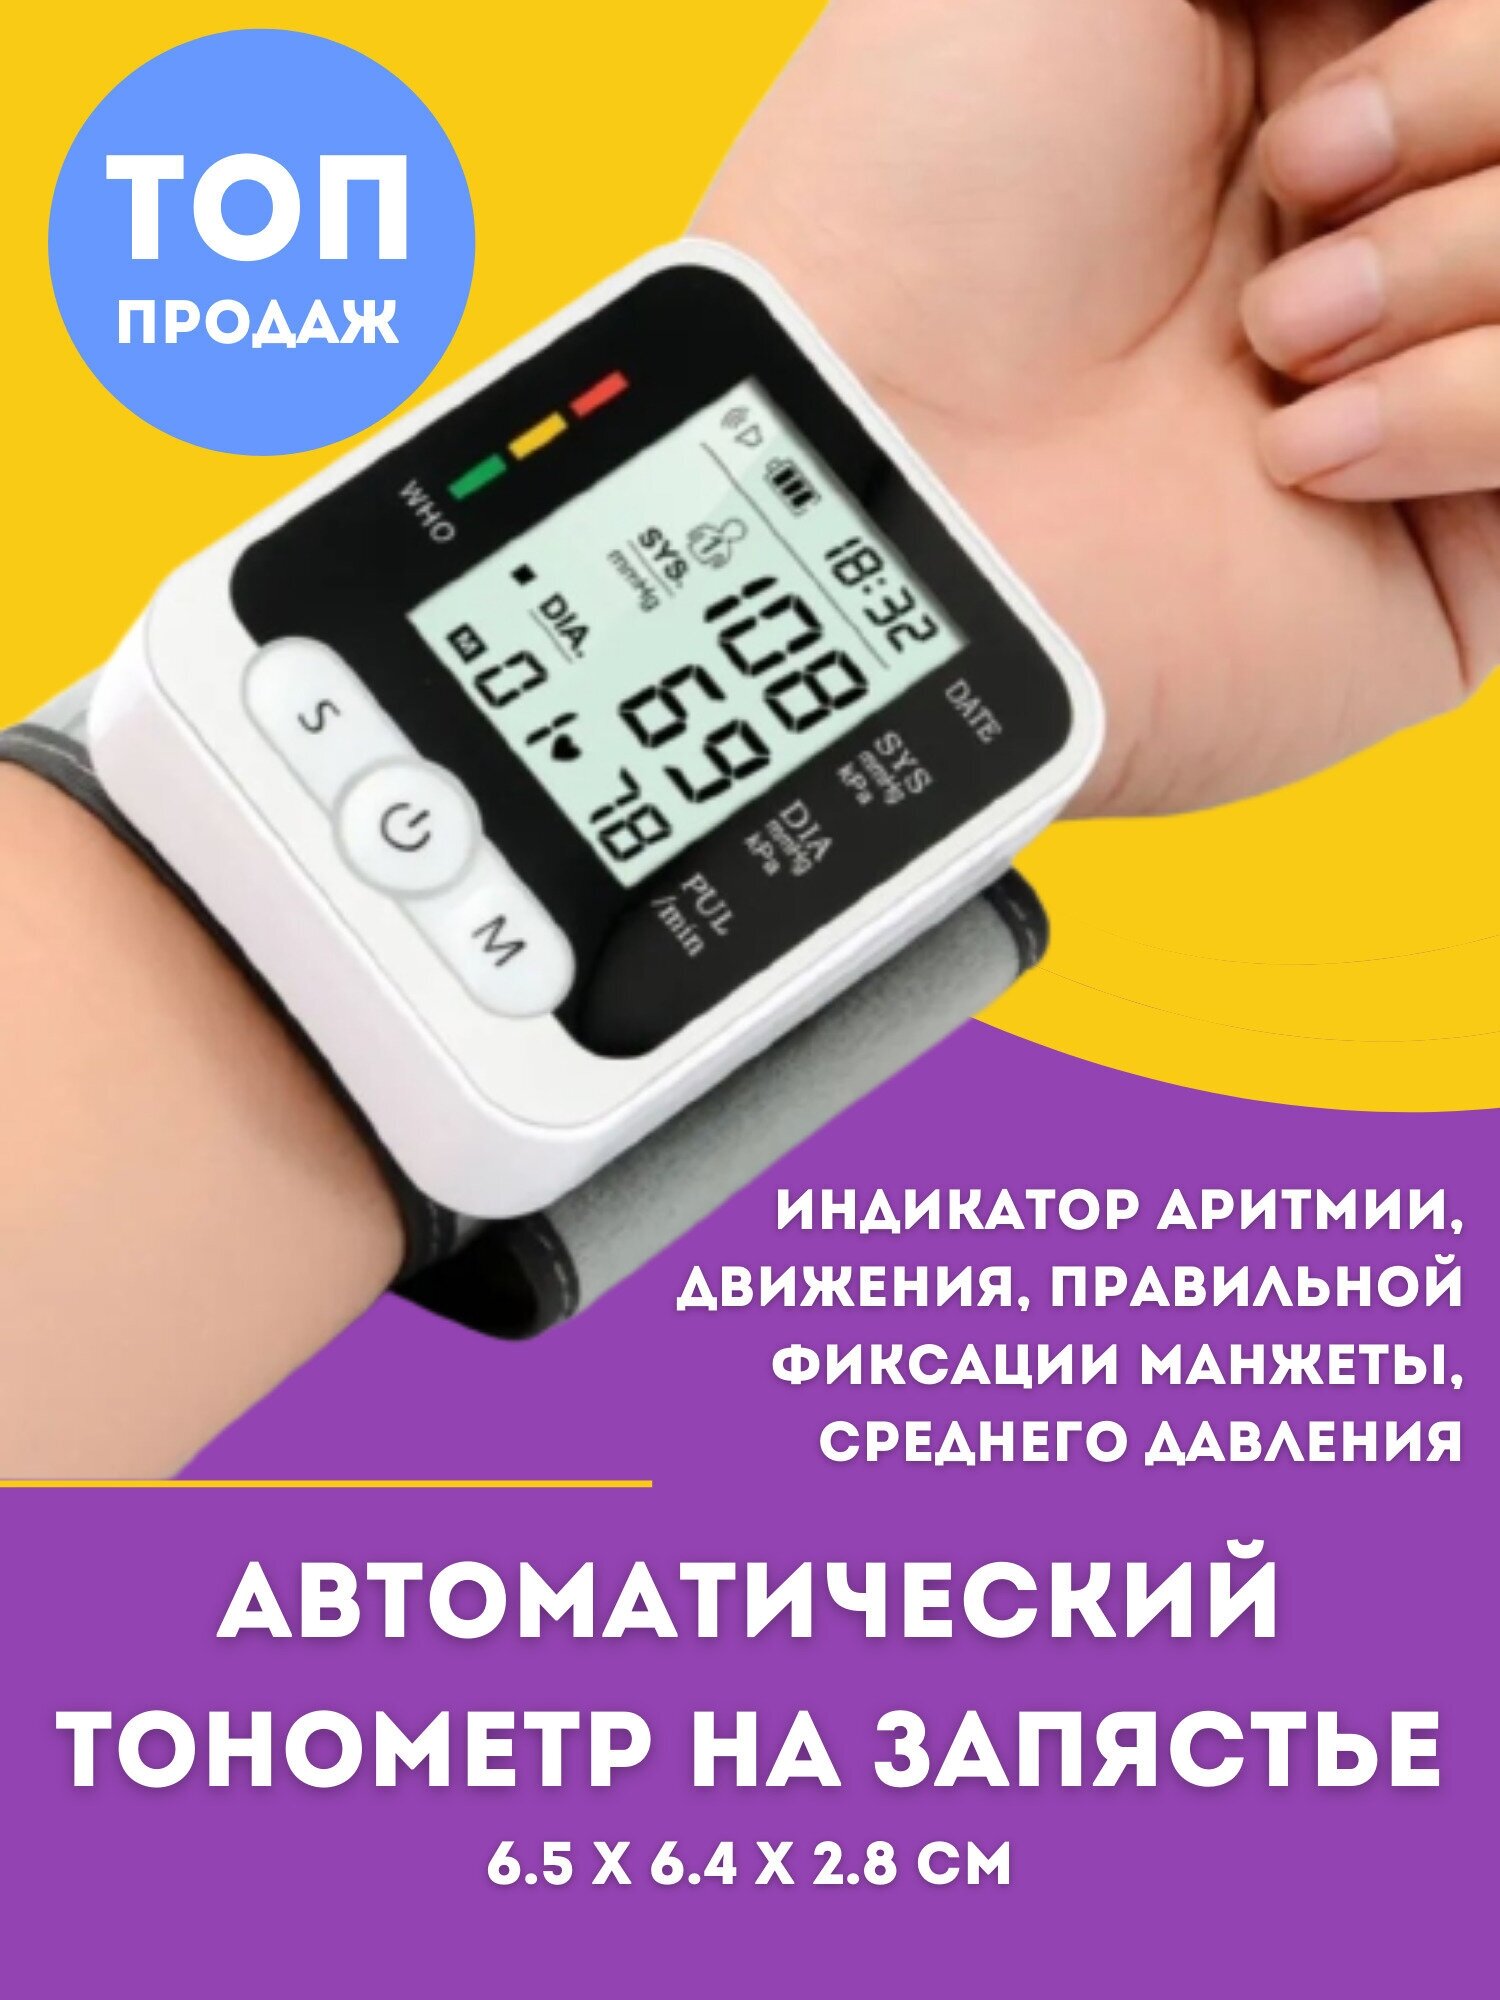 Тонометр ручной на запястье руки / Тонометр автоматический/Аппарат для измерения давления/Измеритель